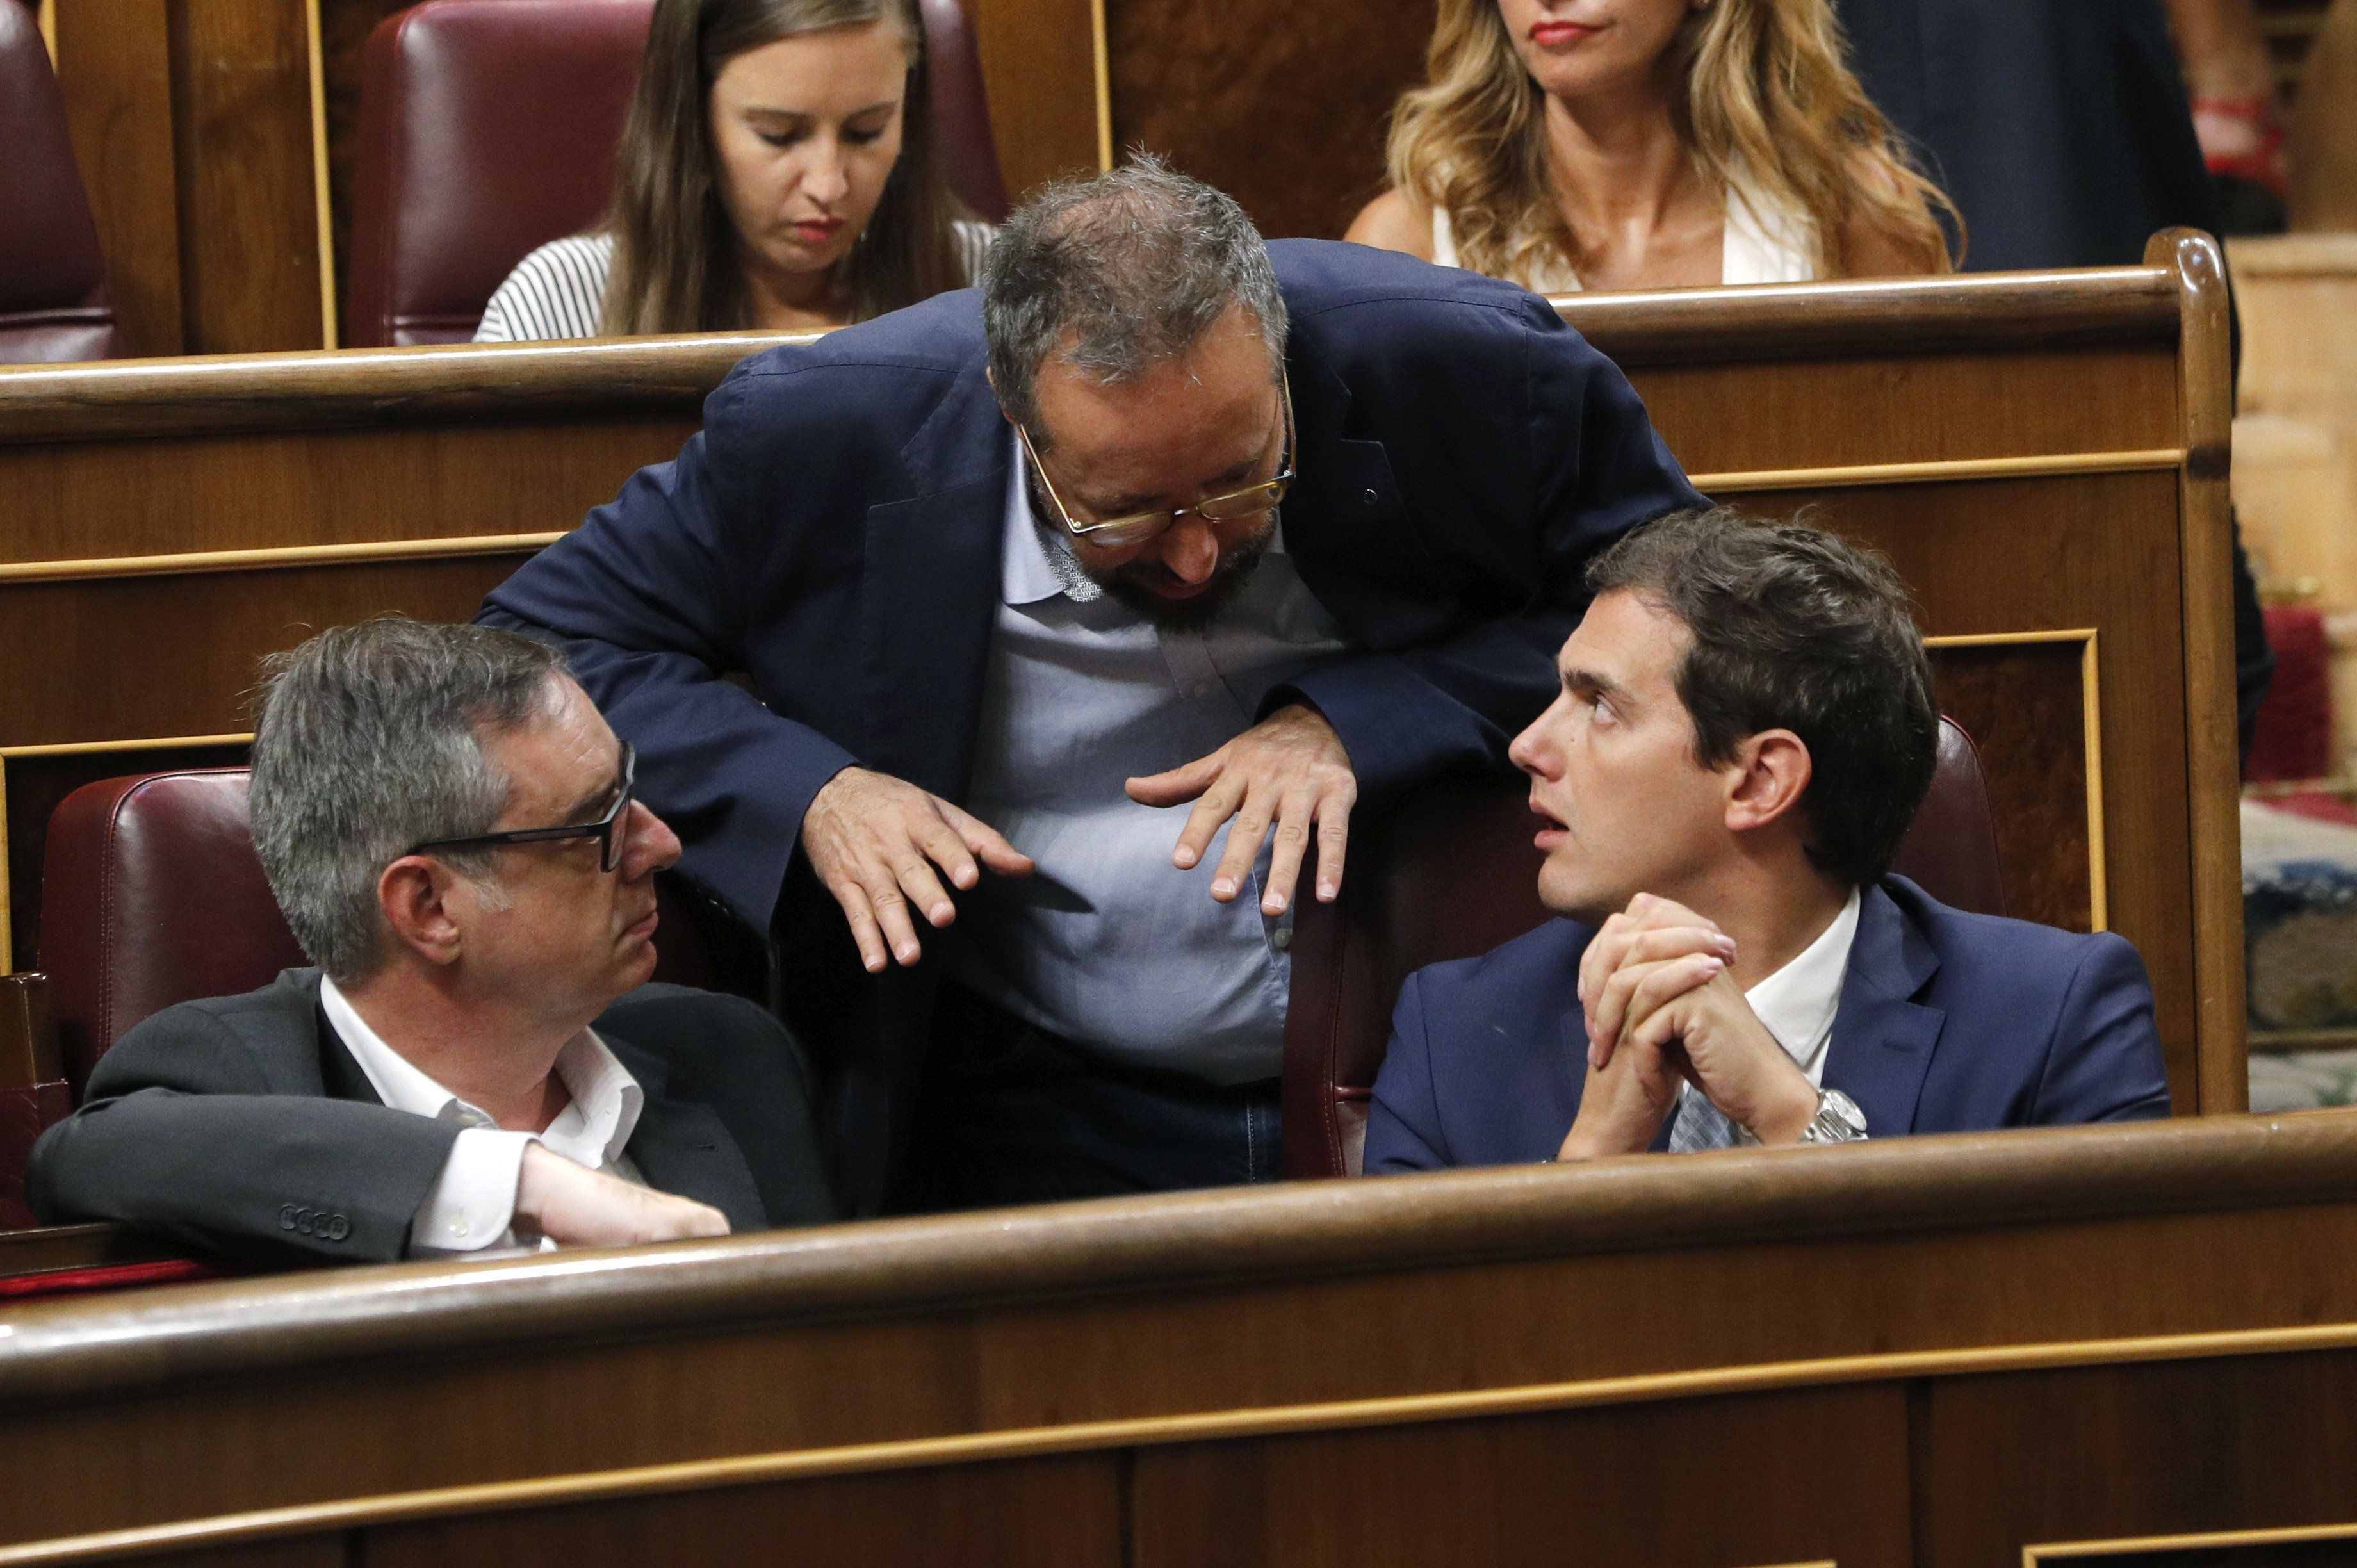 C's votará 'no' a Rajoy si PP y CDC pactan la investidura